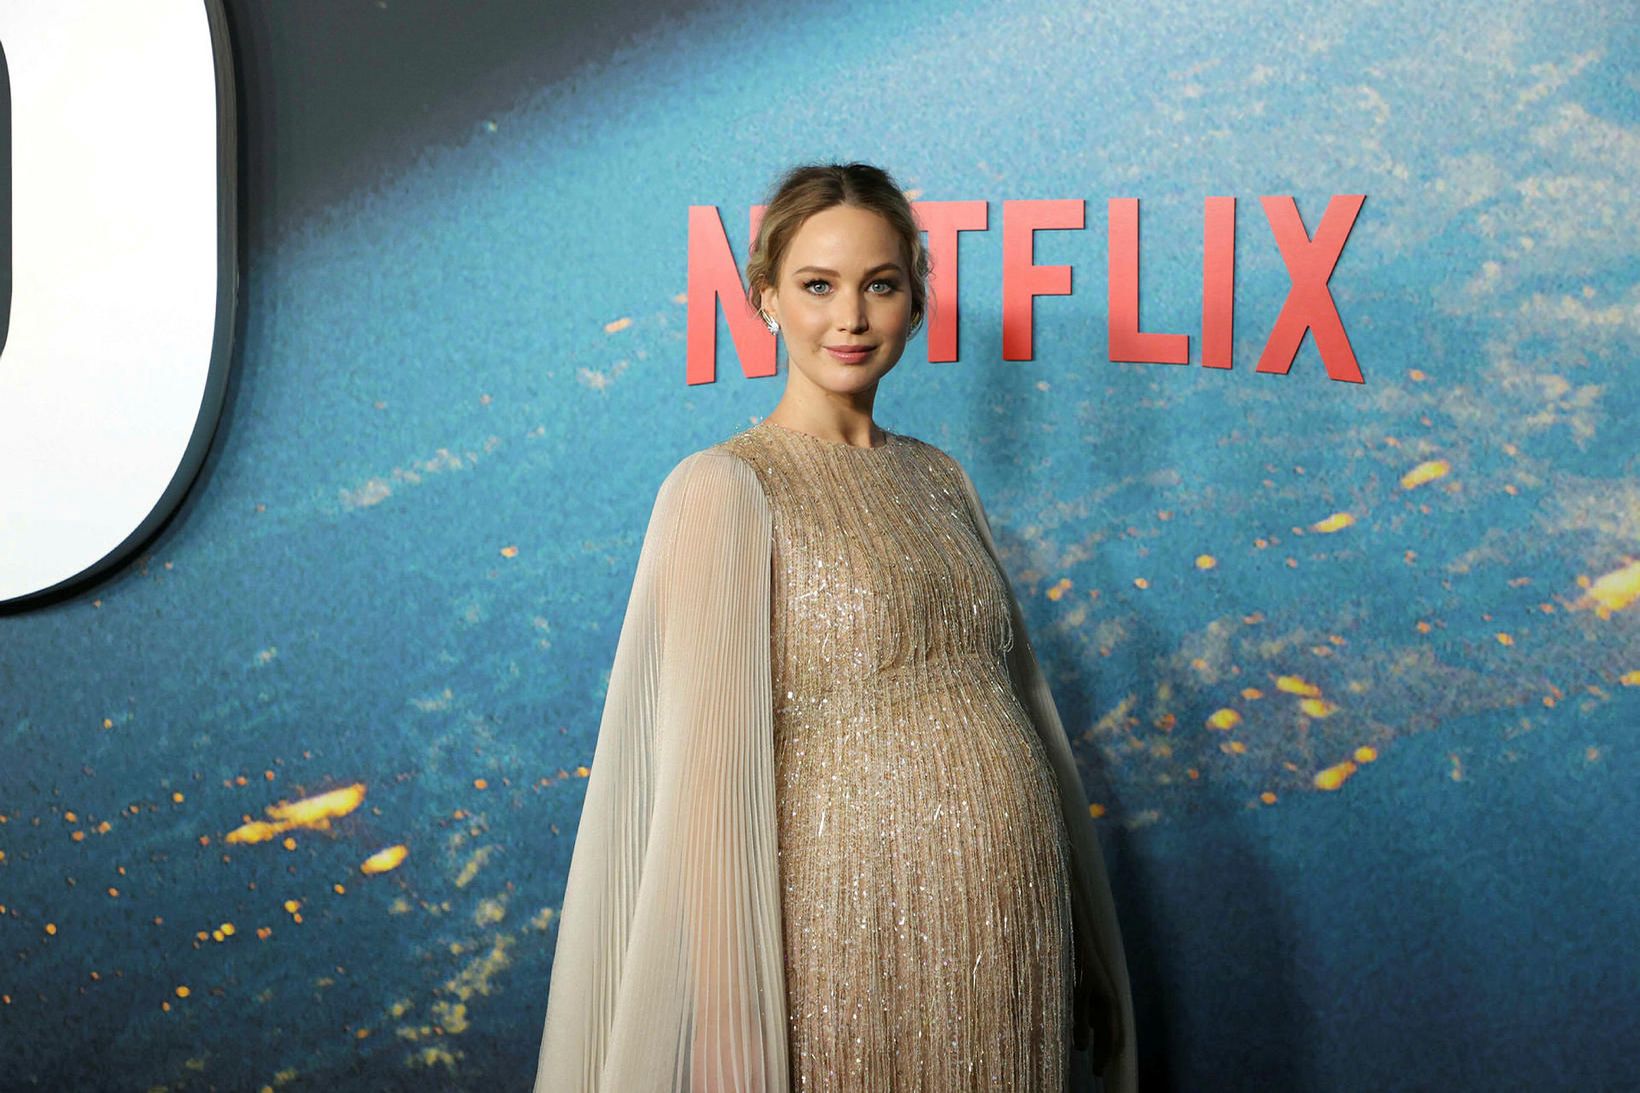 Jennifer Lawrence sýndi óléttubumbuna í fyrsta sinn á rauða dreglinum …